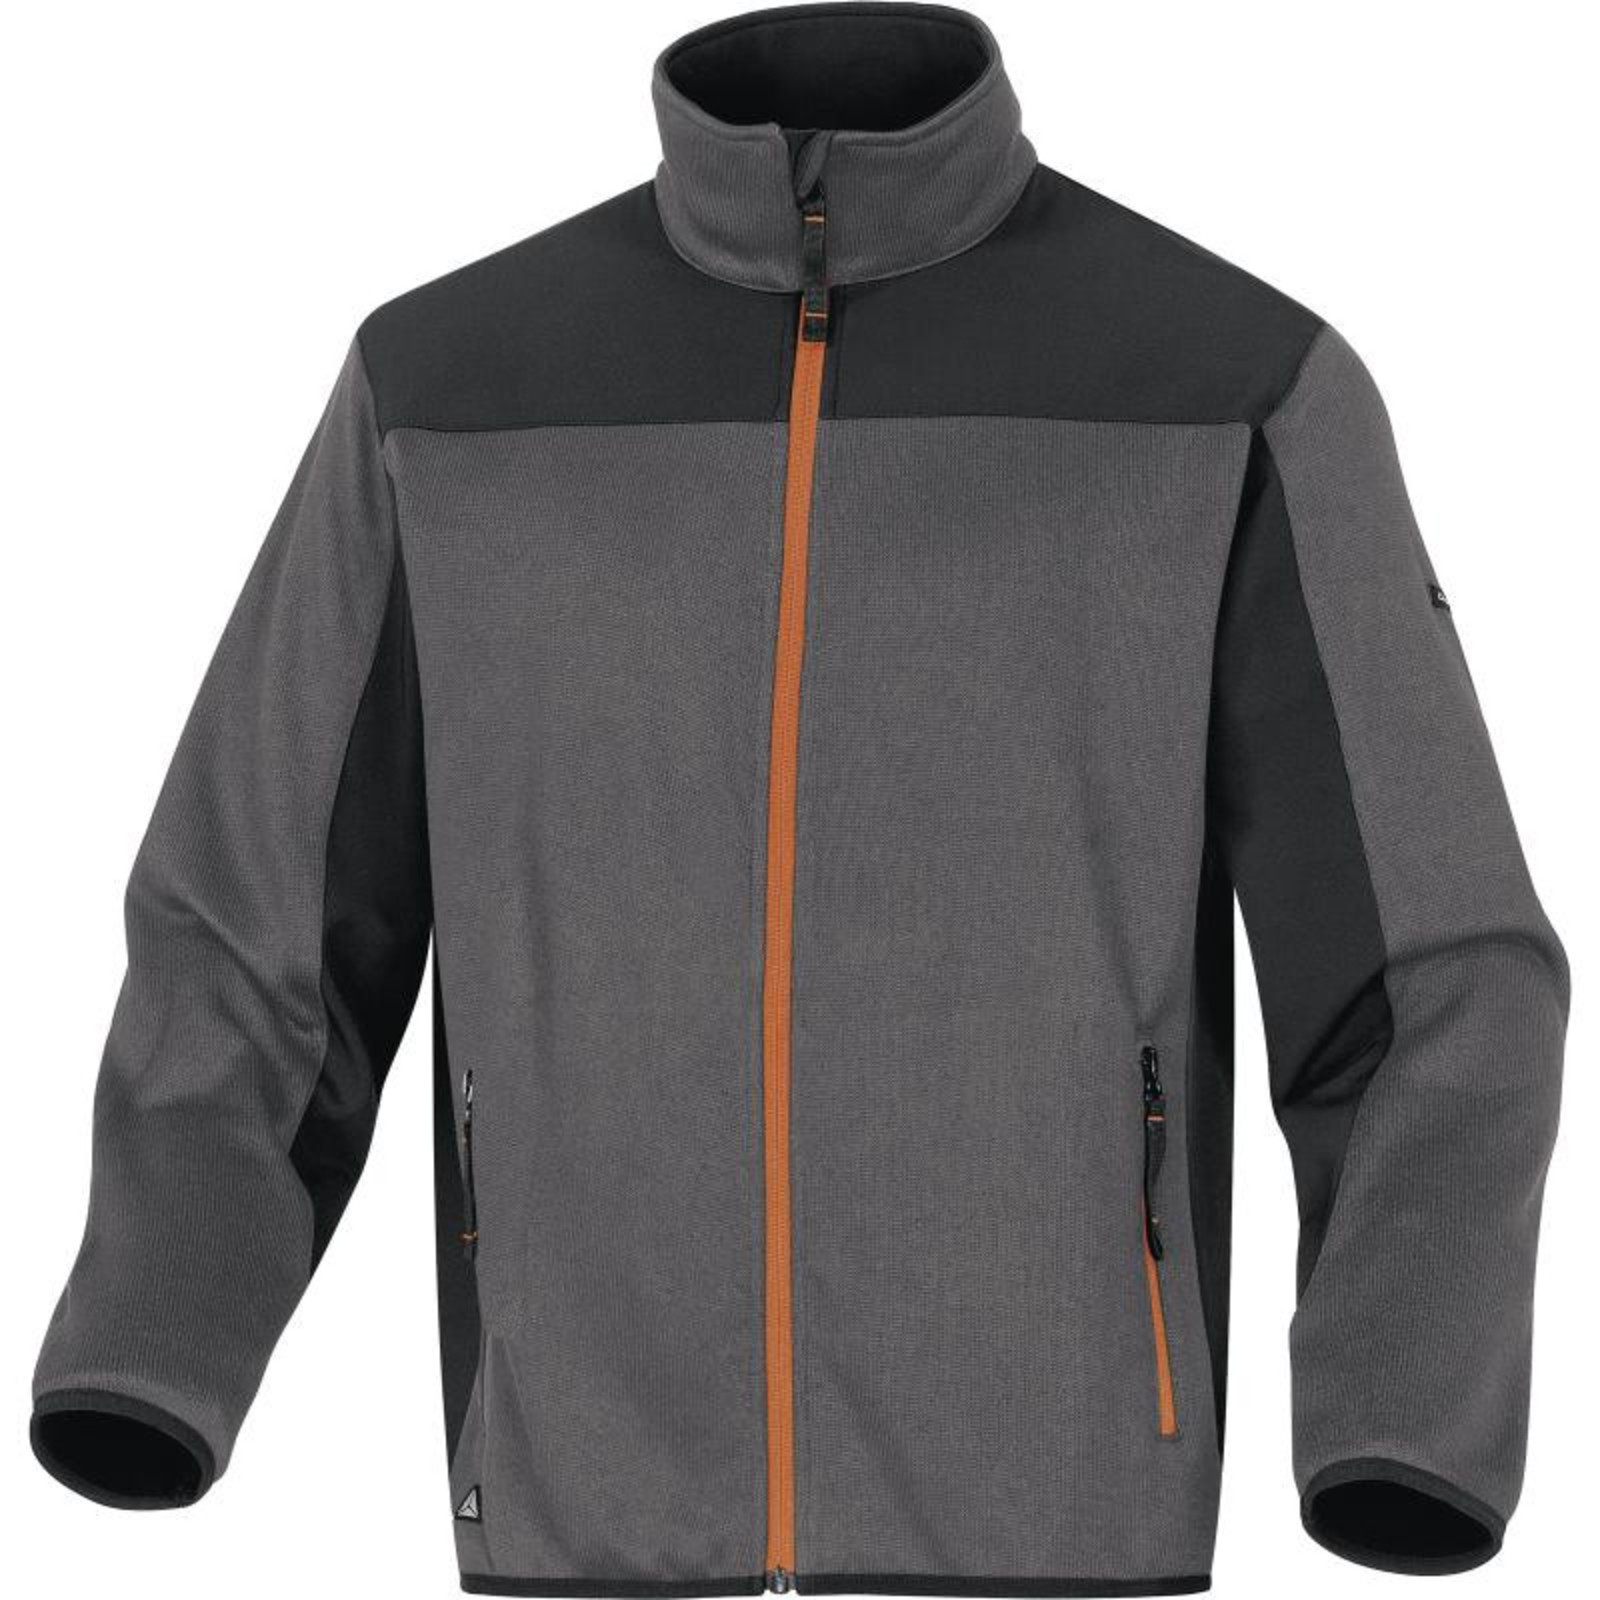 Softshellovo-pleteninová bunda Delta Plus Beaver - veľkosť: XXL, farba: sivá/oranžová